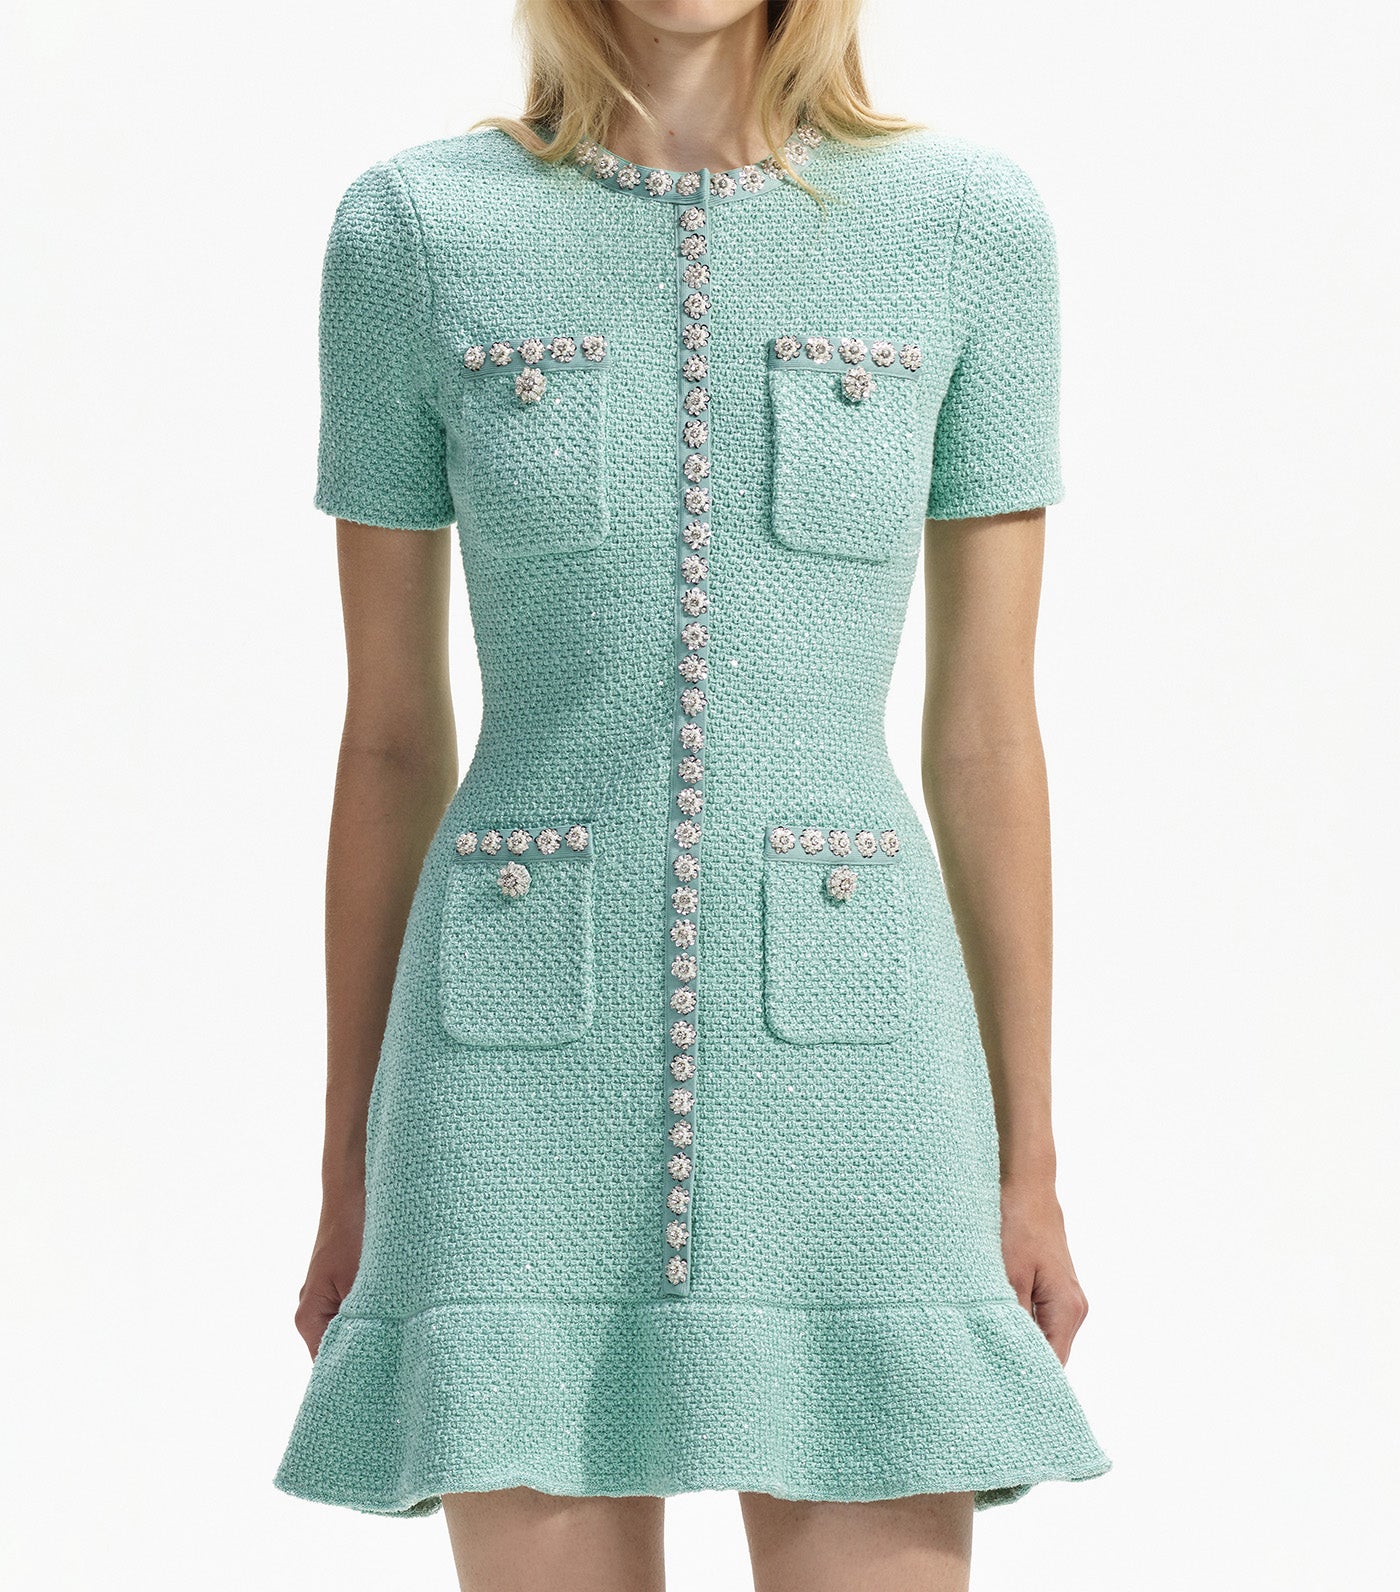 Sequin Knit Mini Dress Mint